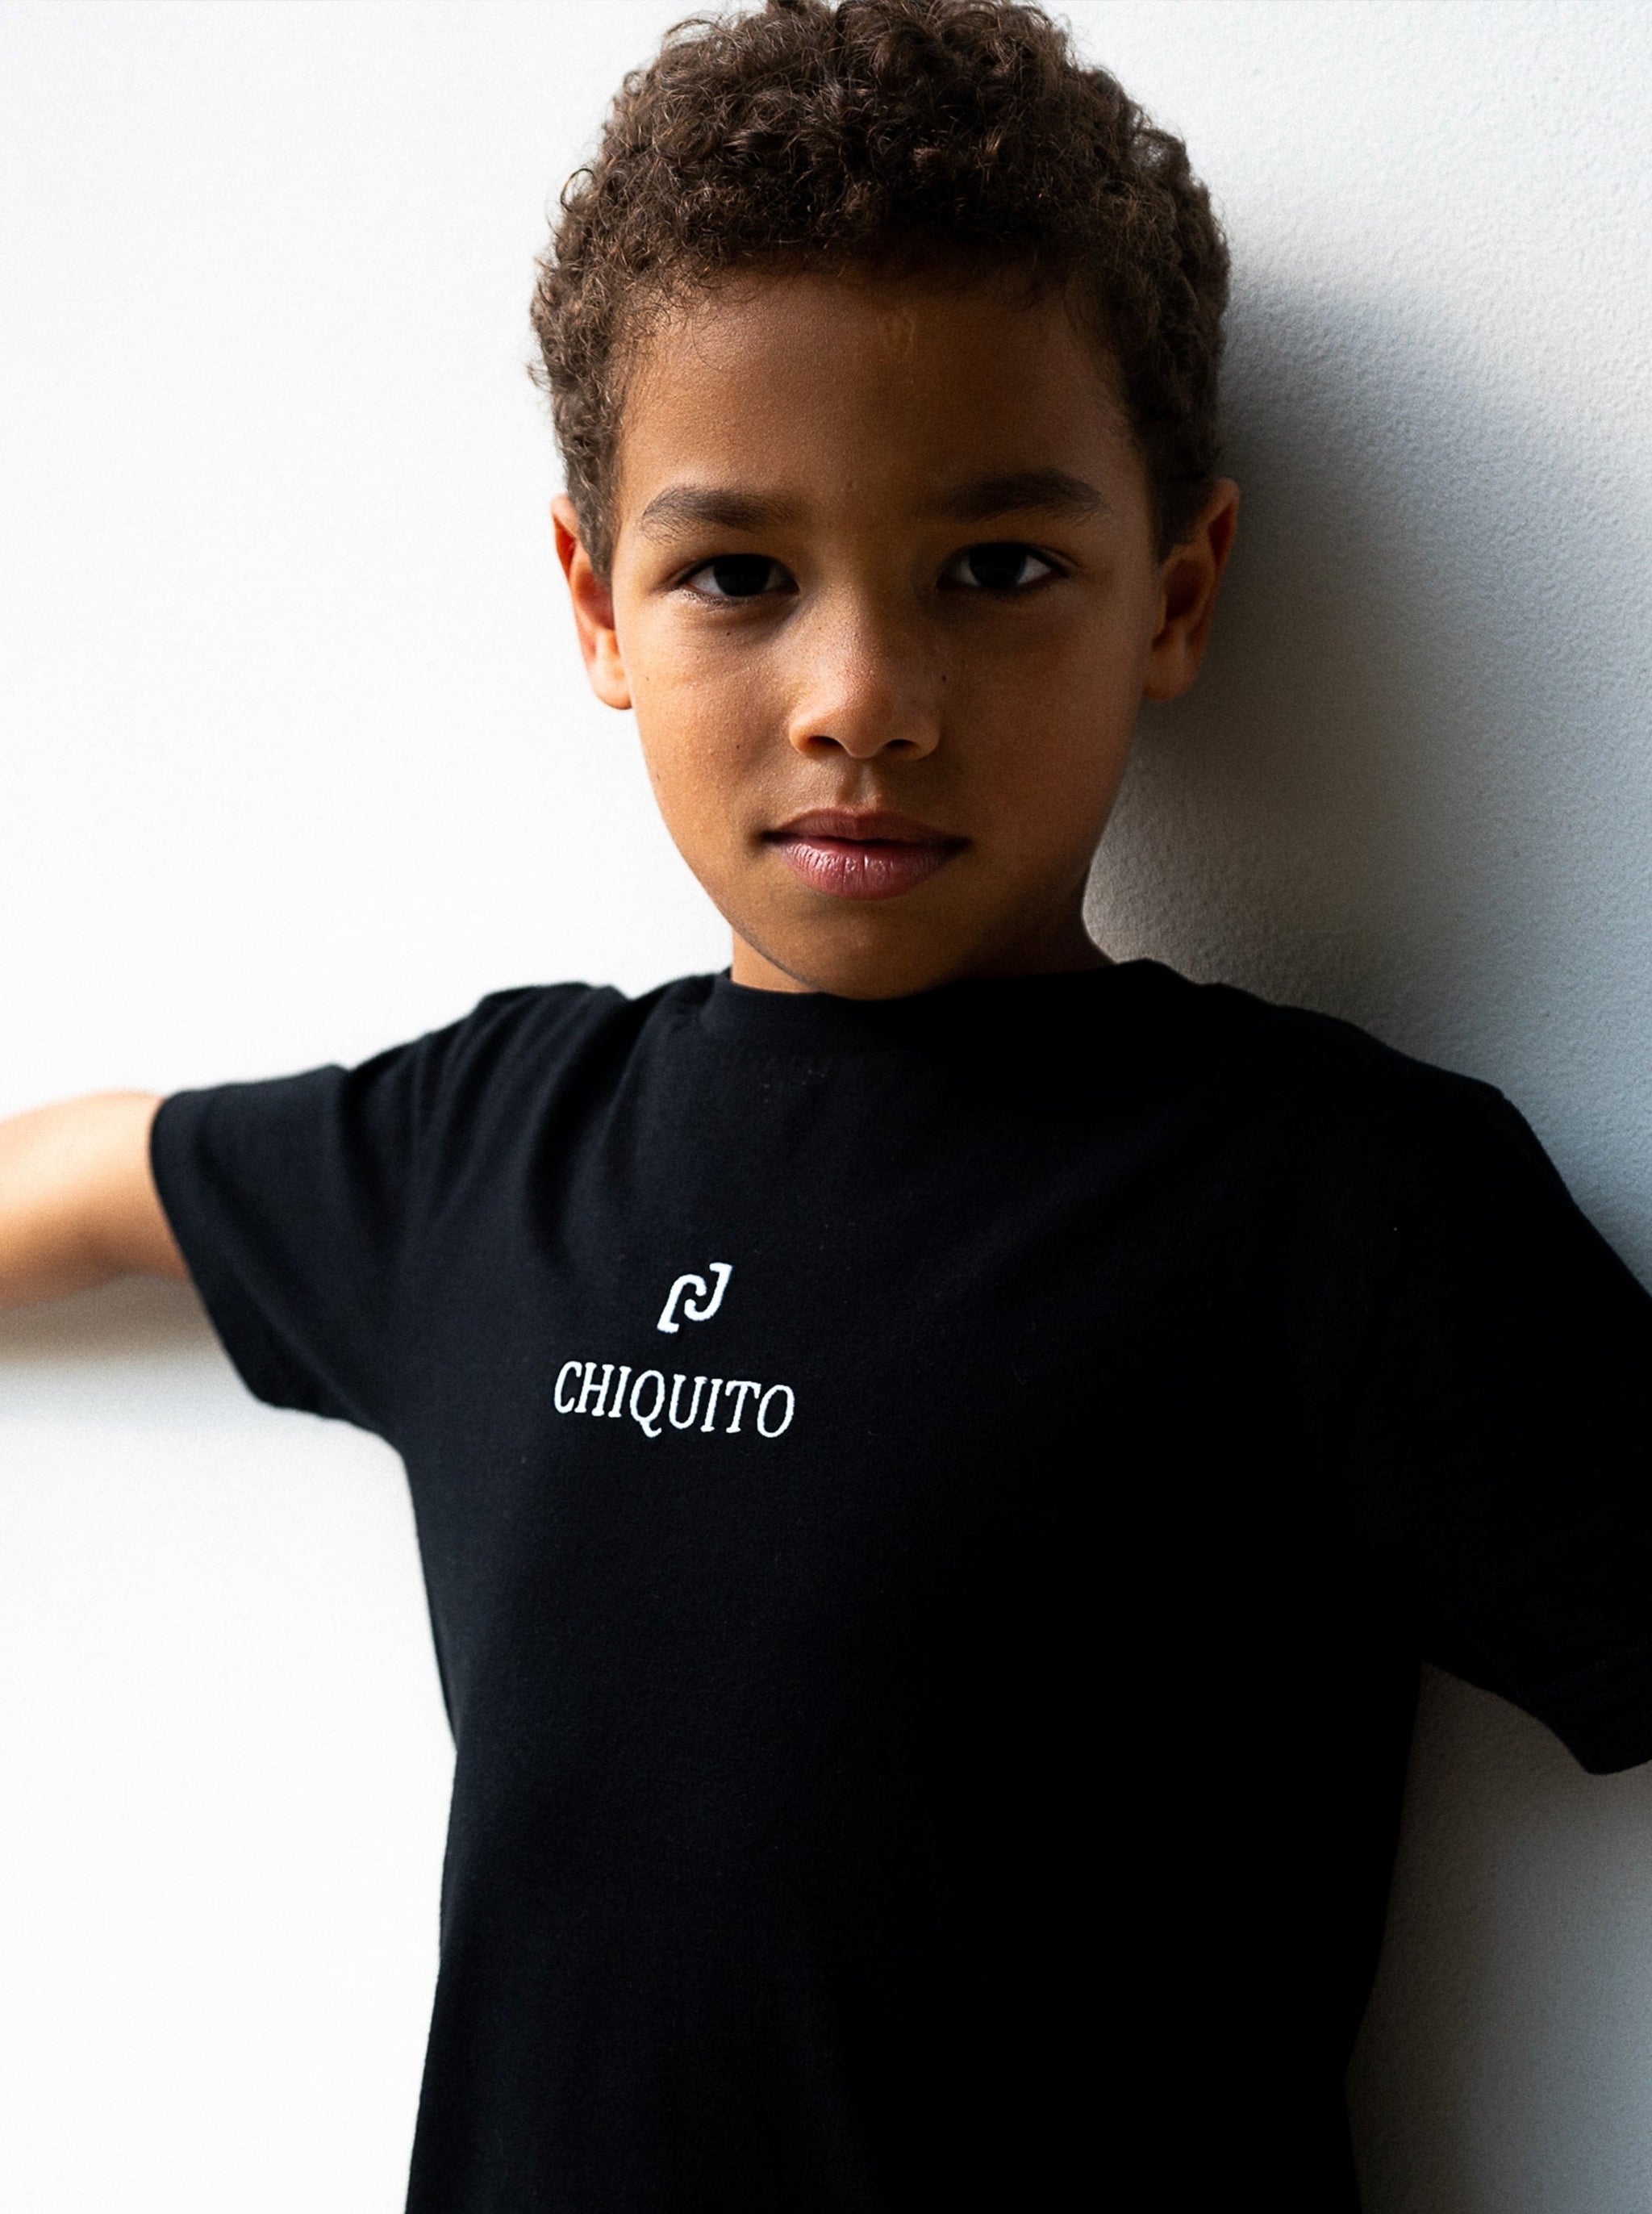 Gros plan sur le t-shirt petit garçon brodé "Chiquito".